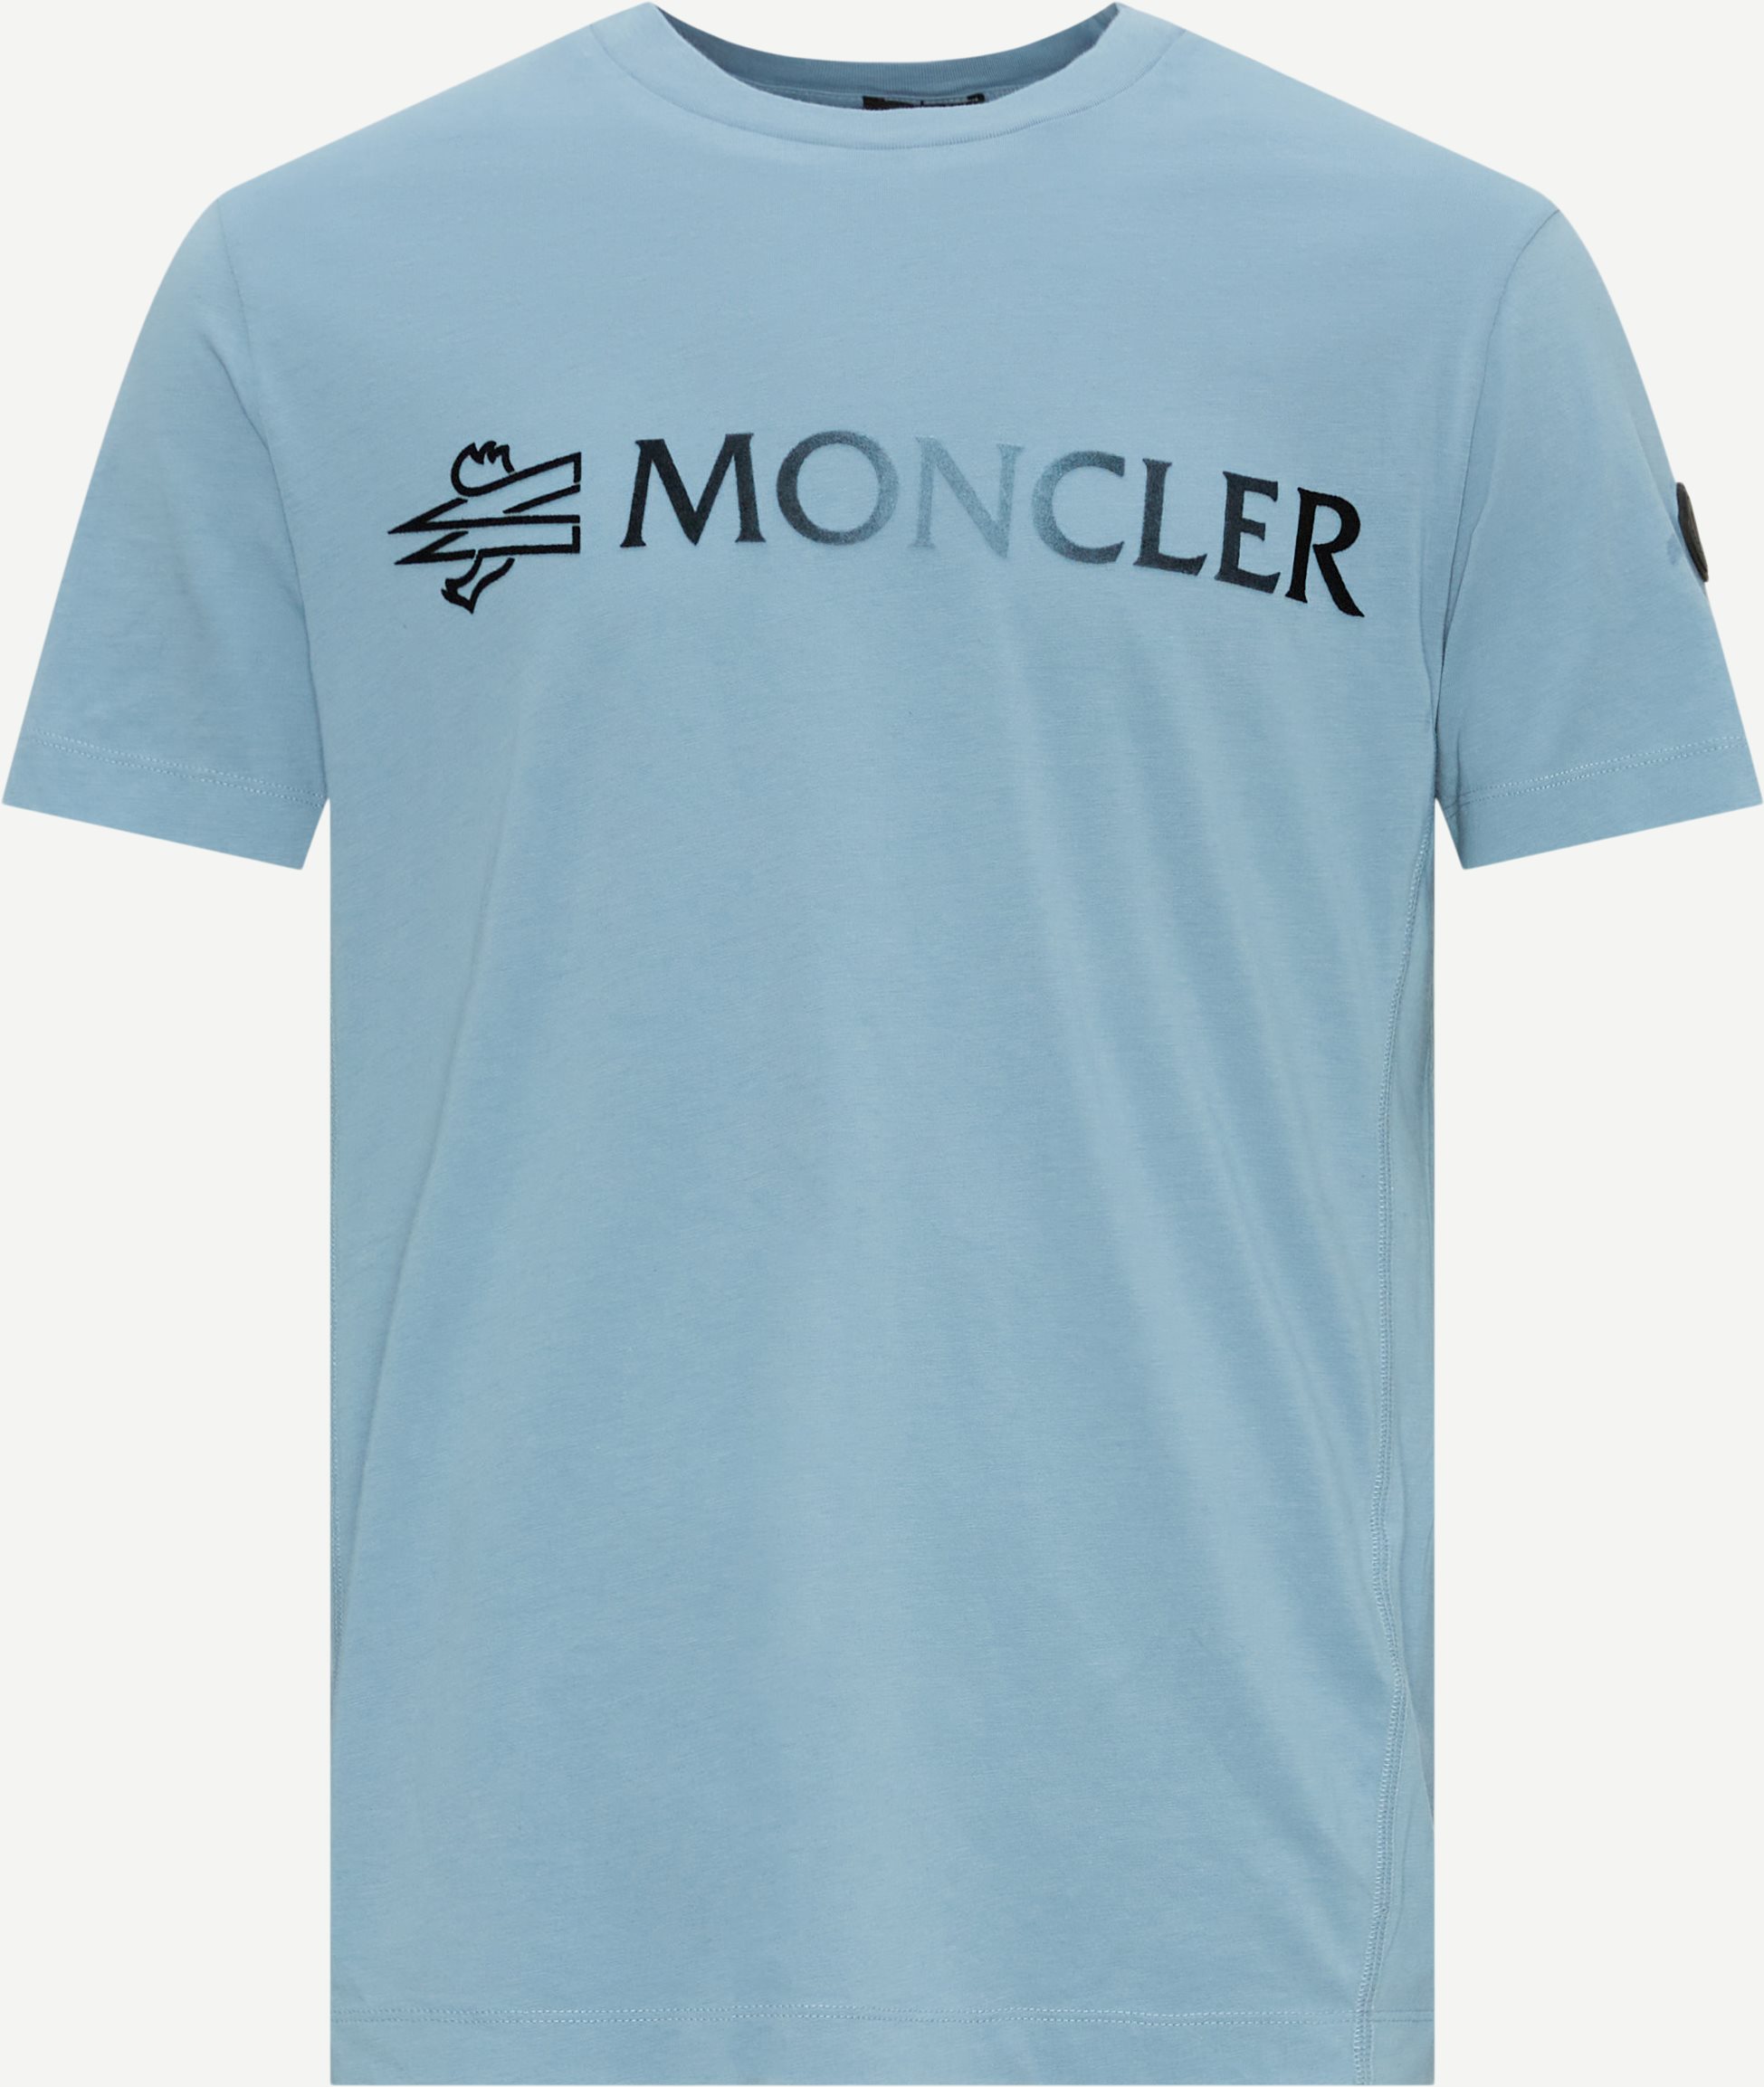 Moncler T-shirts 8C00016 89A17 Blue